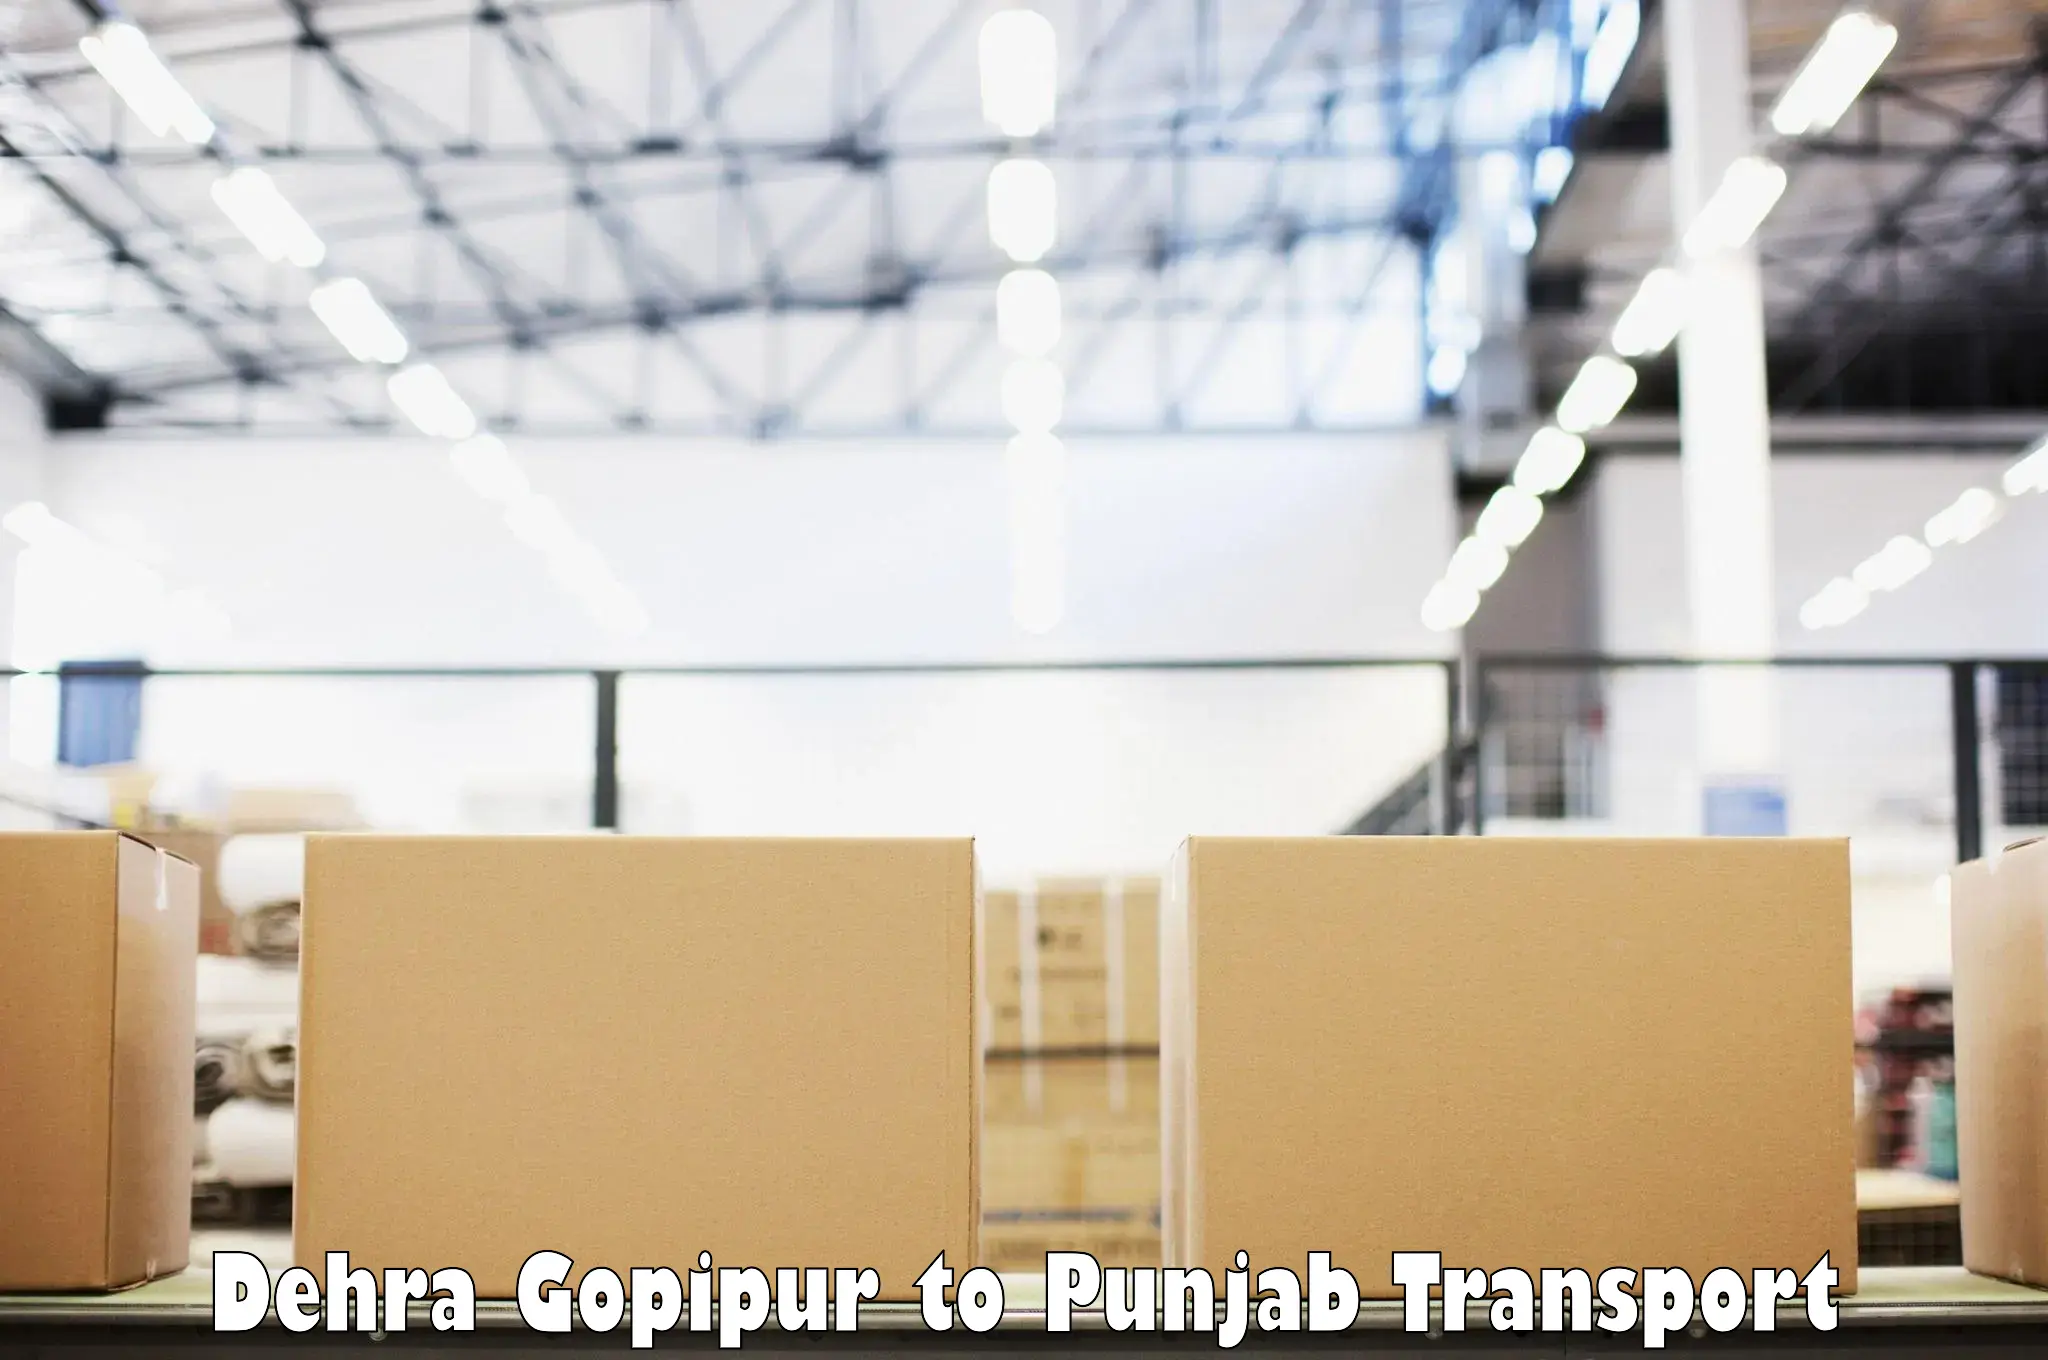 Commercial transport service Dehra Gopipur to Jalandhar